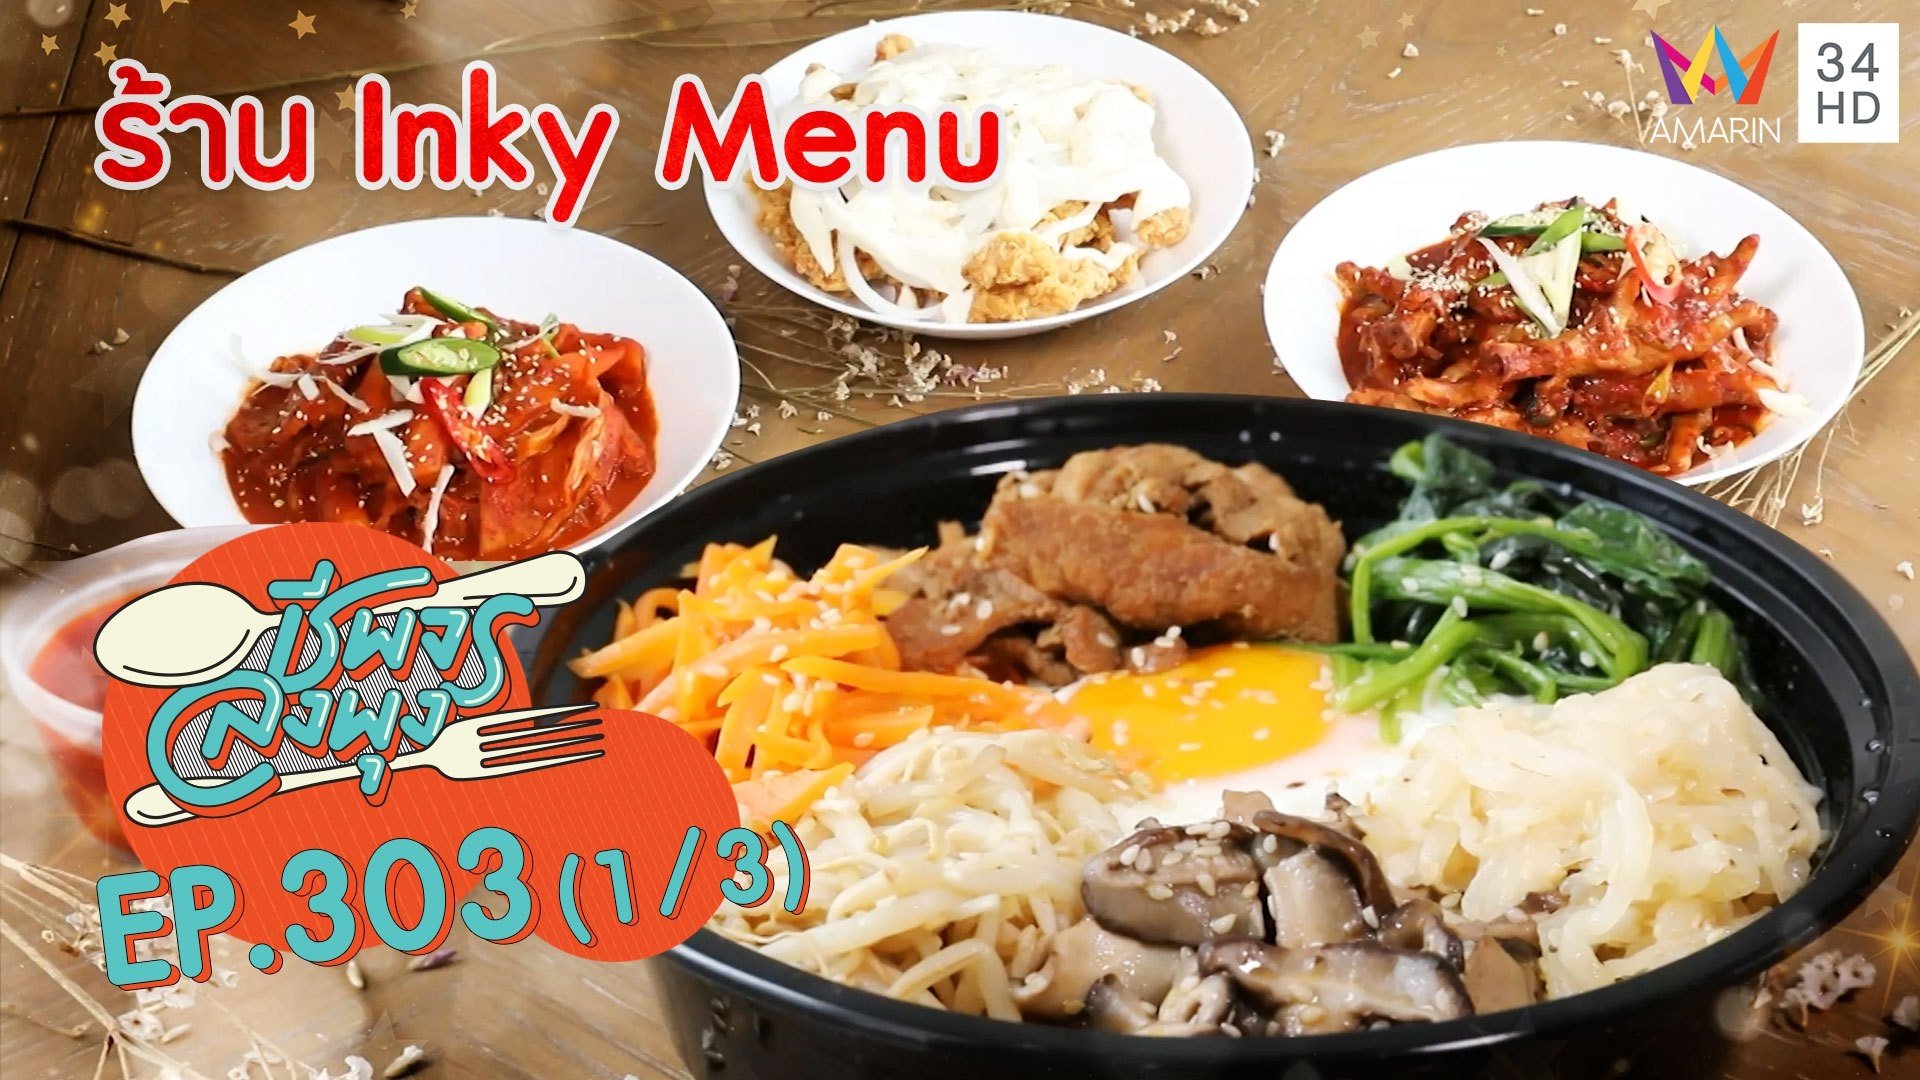 ลิ้มรสอาหารเกาหลีสุดฟินเหมือนไปกินที่แดนกิมจิ @ ร้าน Inky Menu | ชีพจรลงพุง | 13 มิ.ย. 64 (1/3) | AMARIN TVHD34